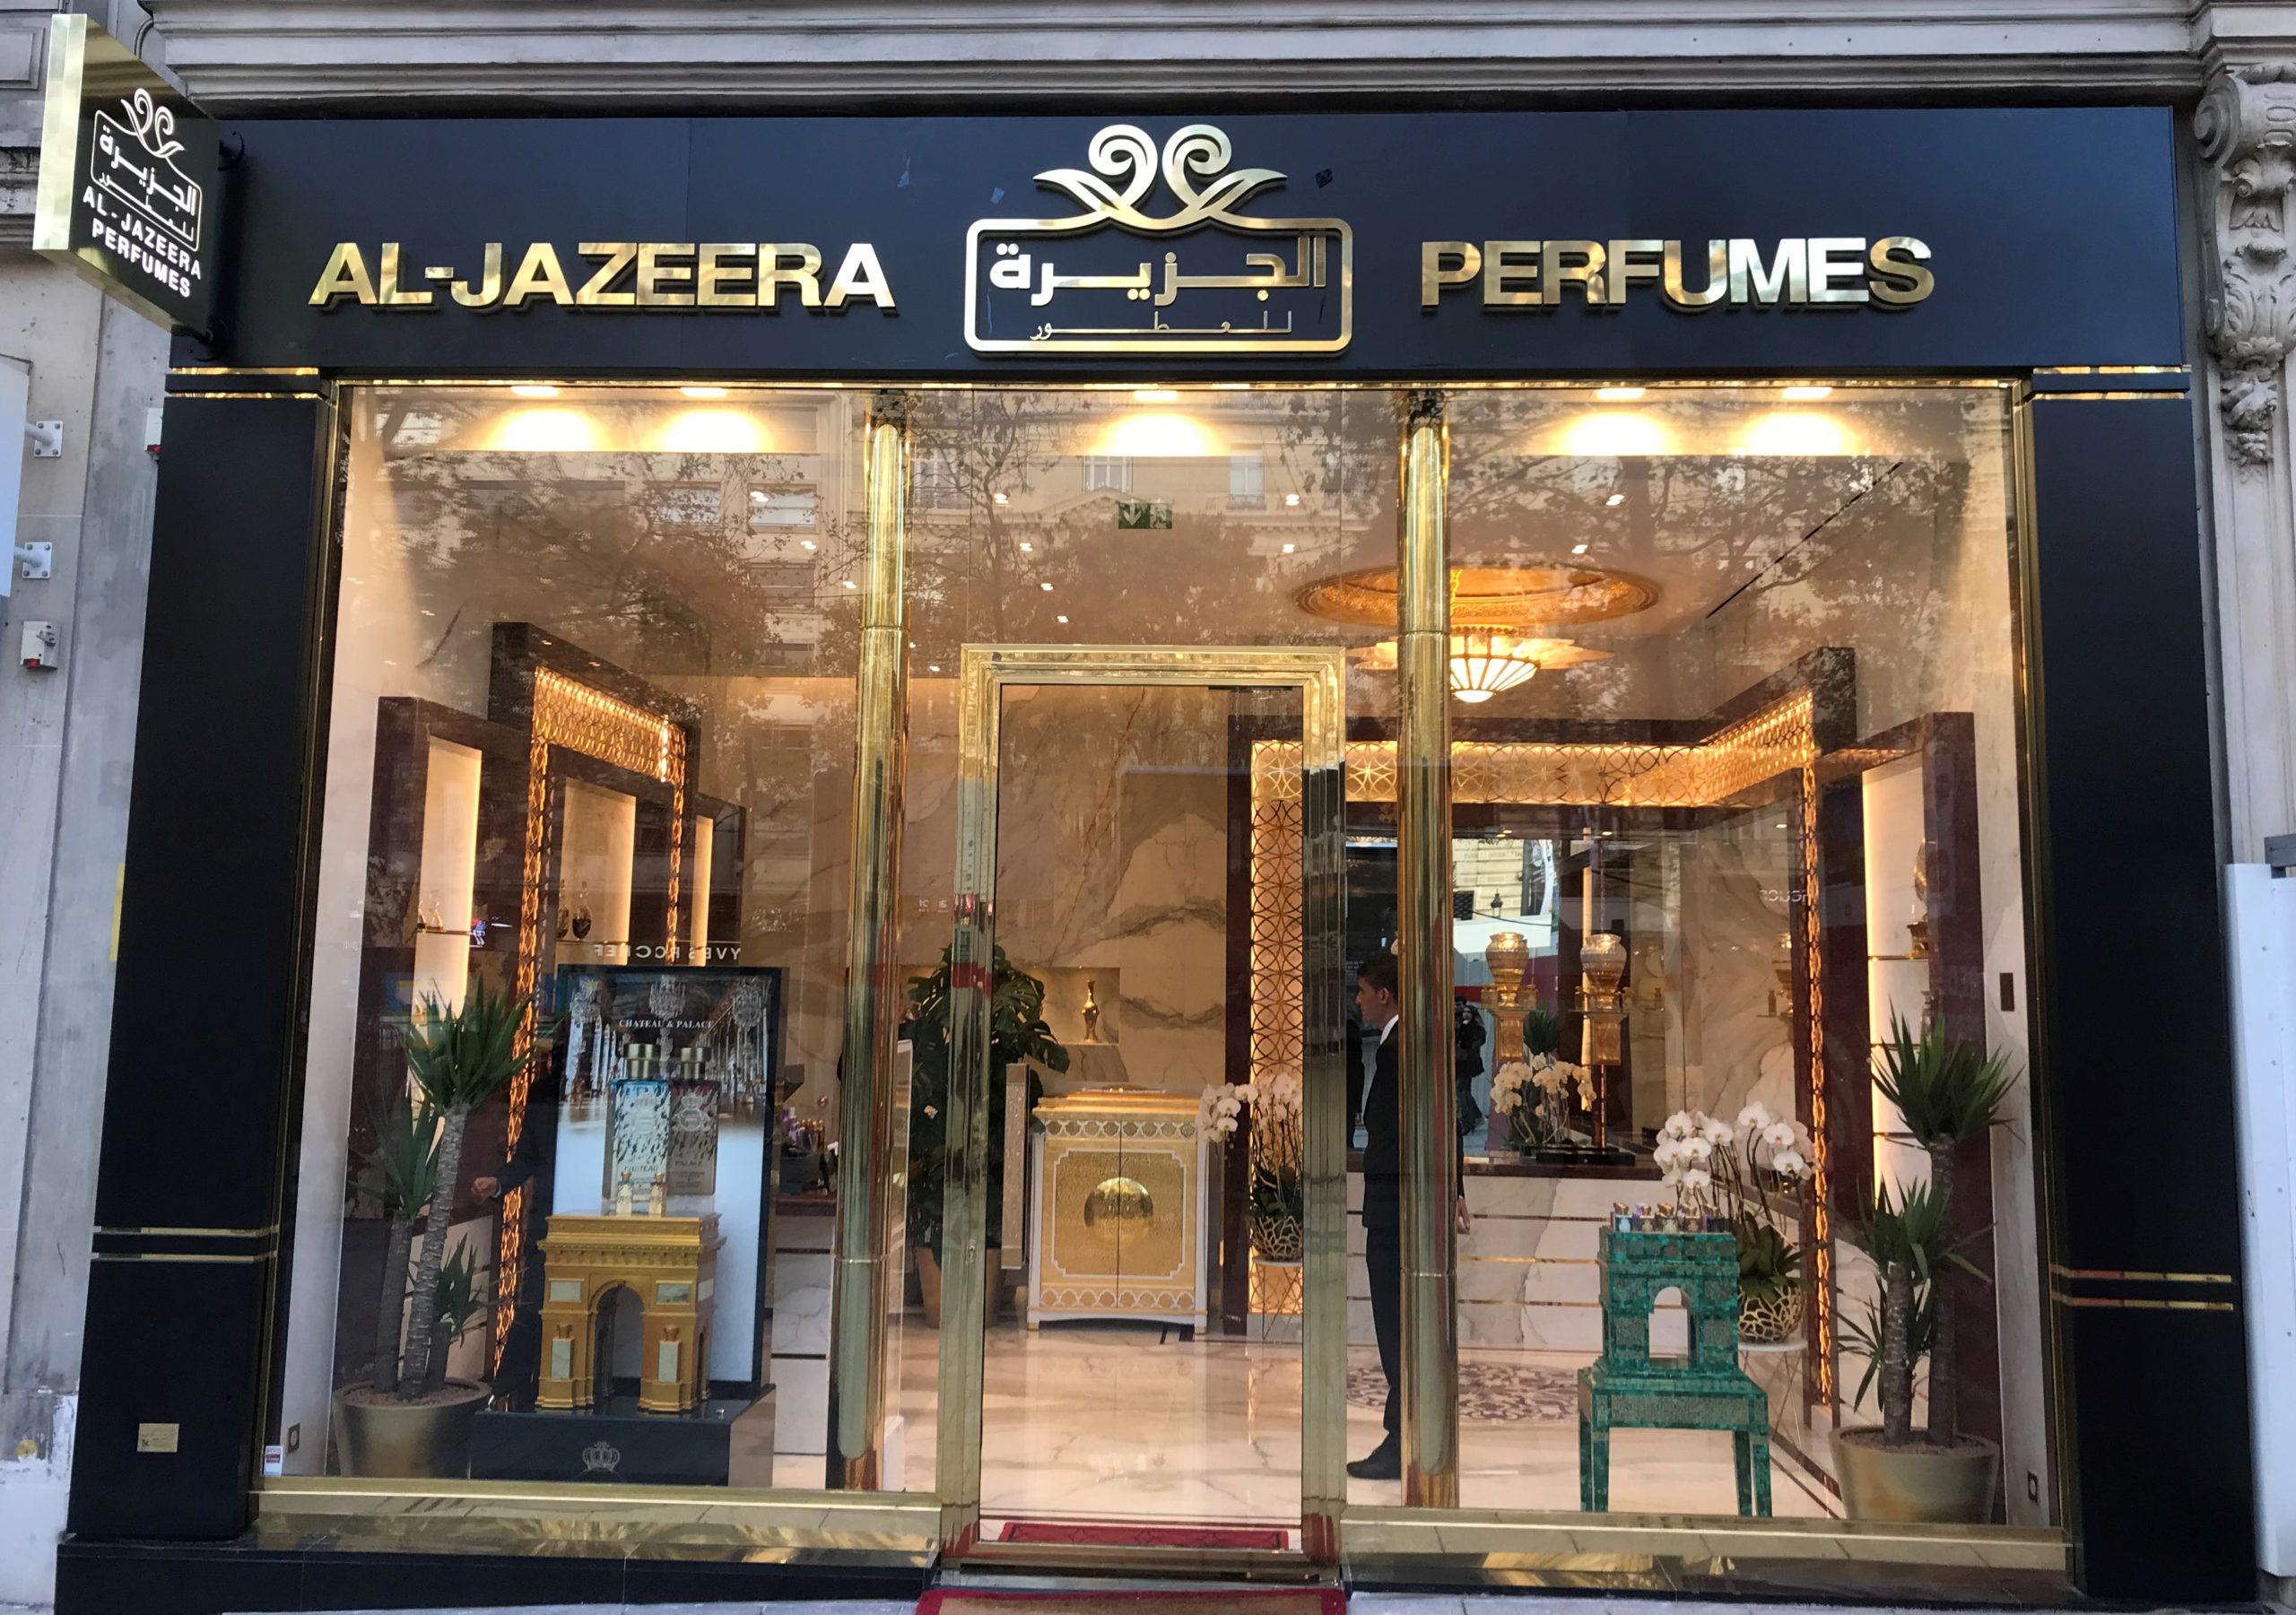 Al-Jazeera Perfumes Chamlps Elysees